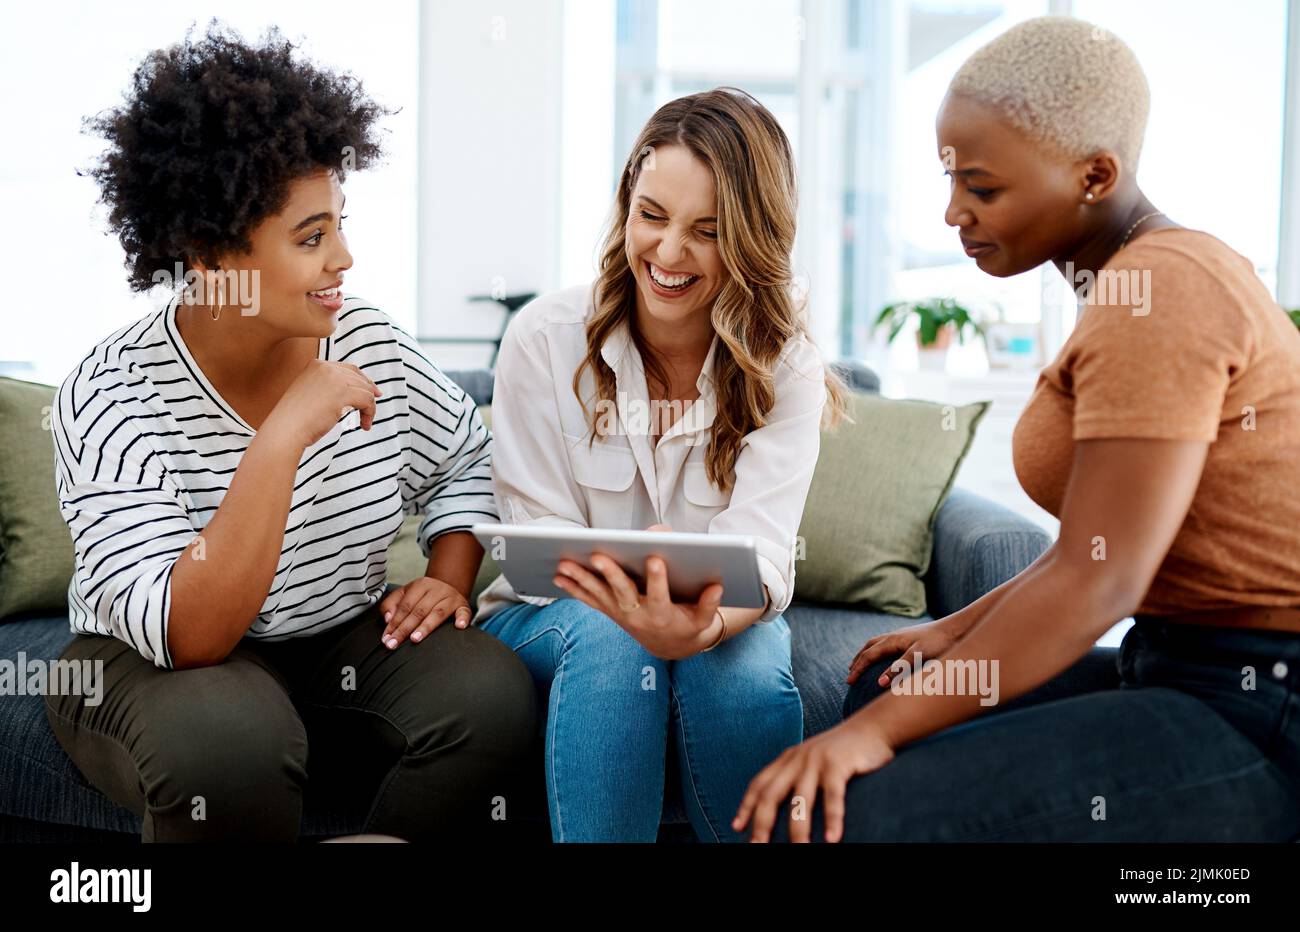 Il s'agit de rester innovant et pertinent dans l'industrie. Un groupe de femmes d'affaires travaillant ensemble sur une tablette numérique dans un bureau. Banque D'Images